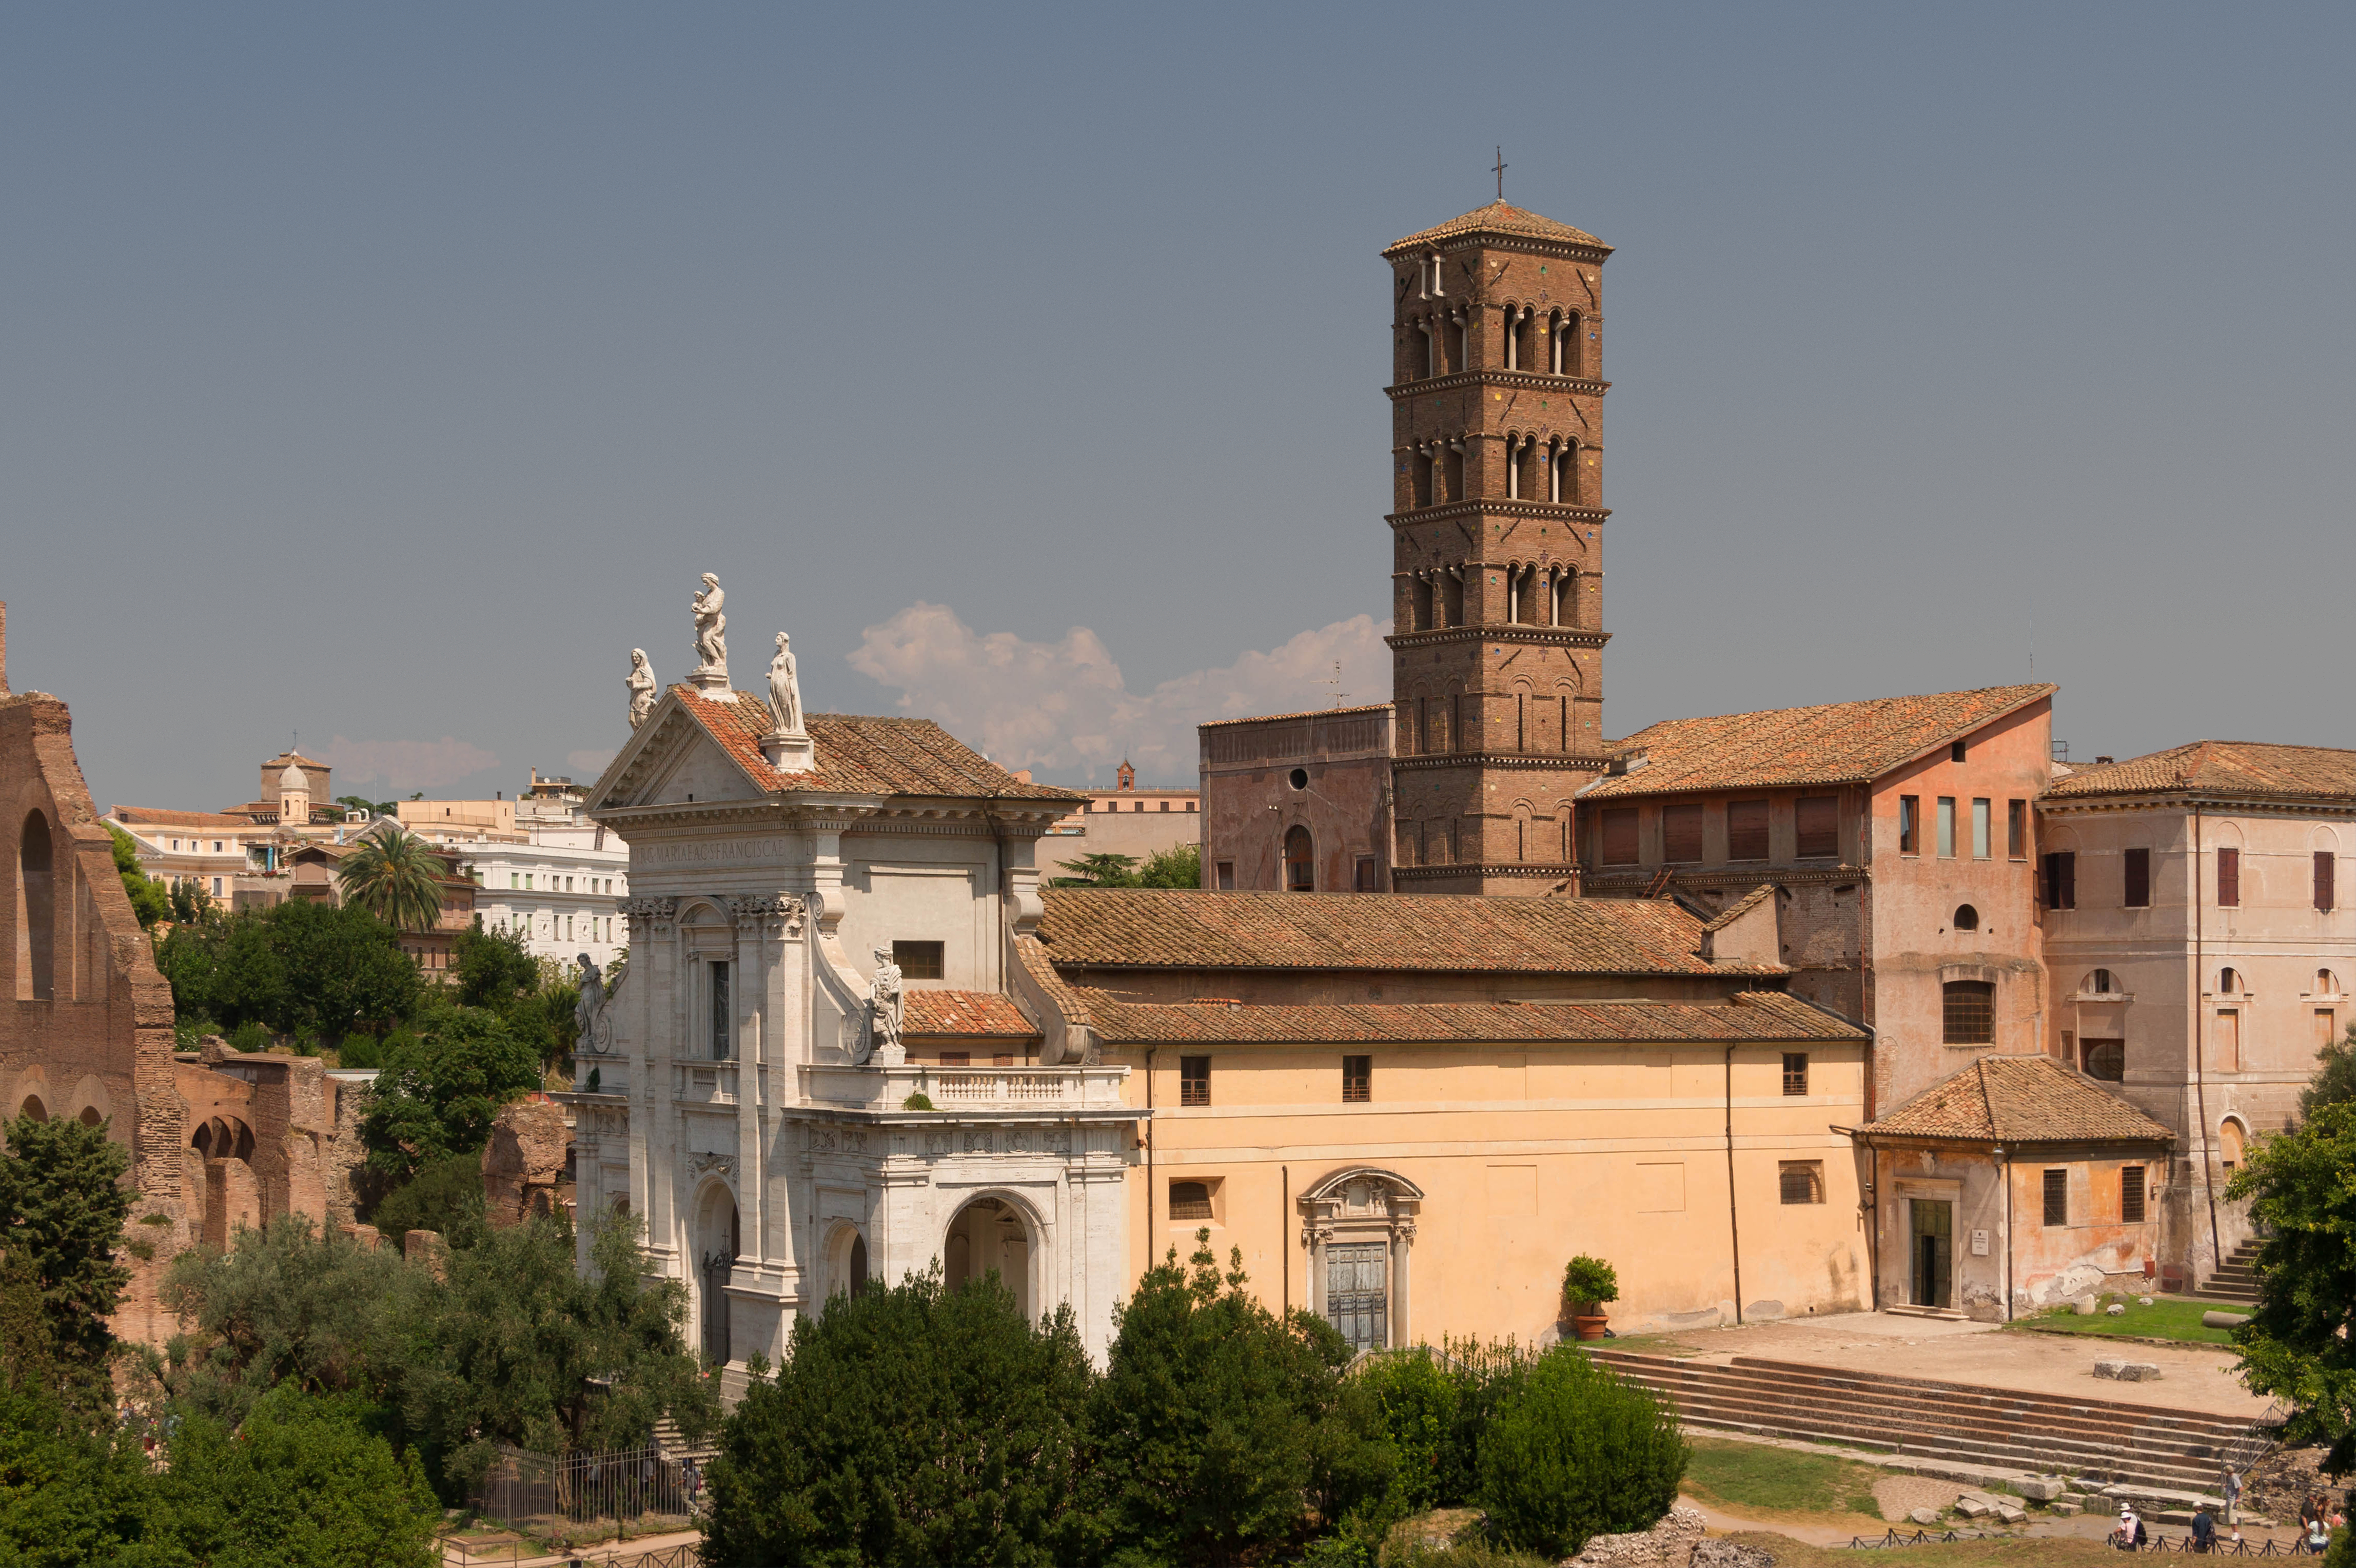 Santa Francesca Romana, from Palatine hill